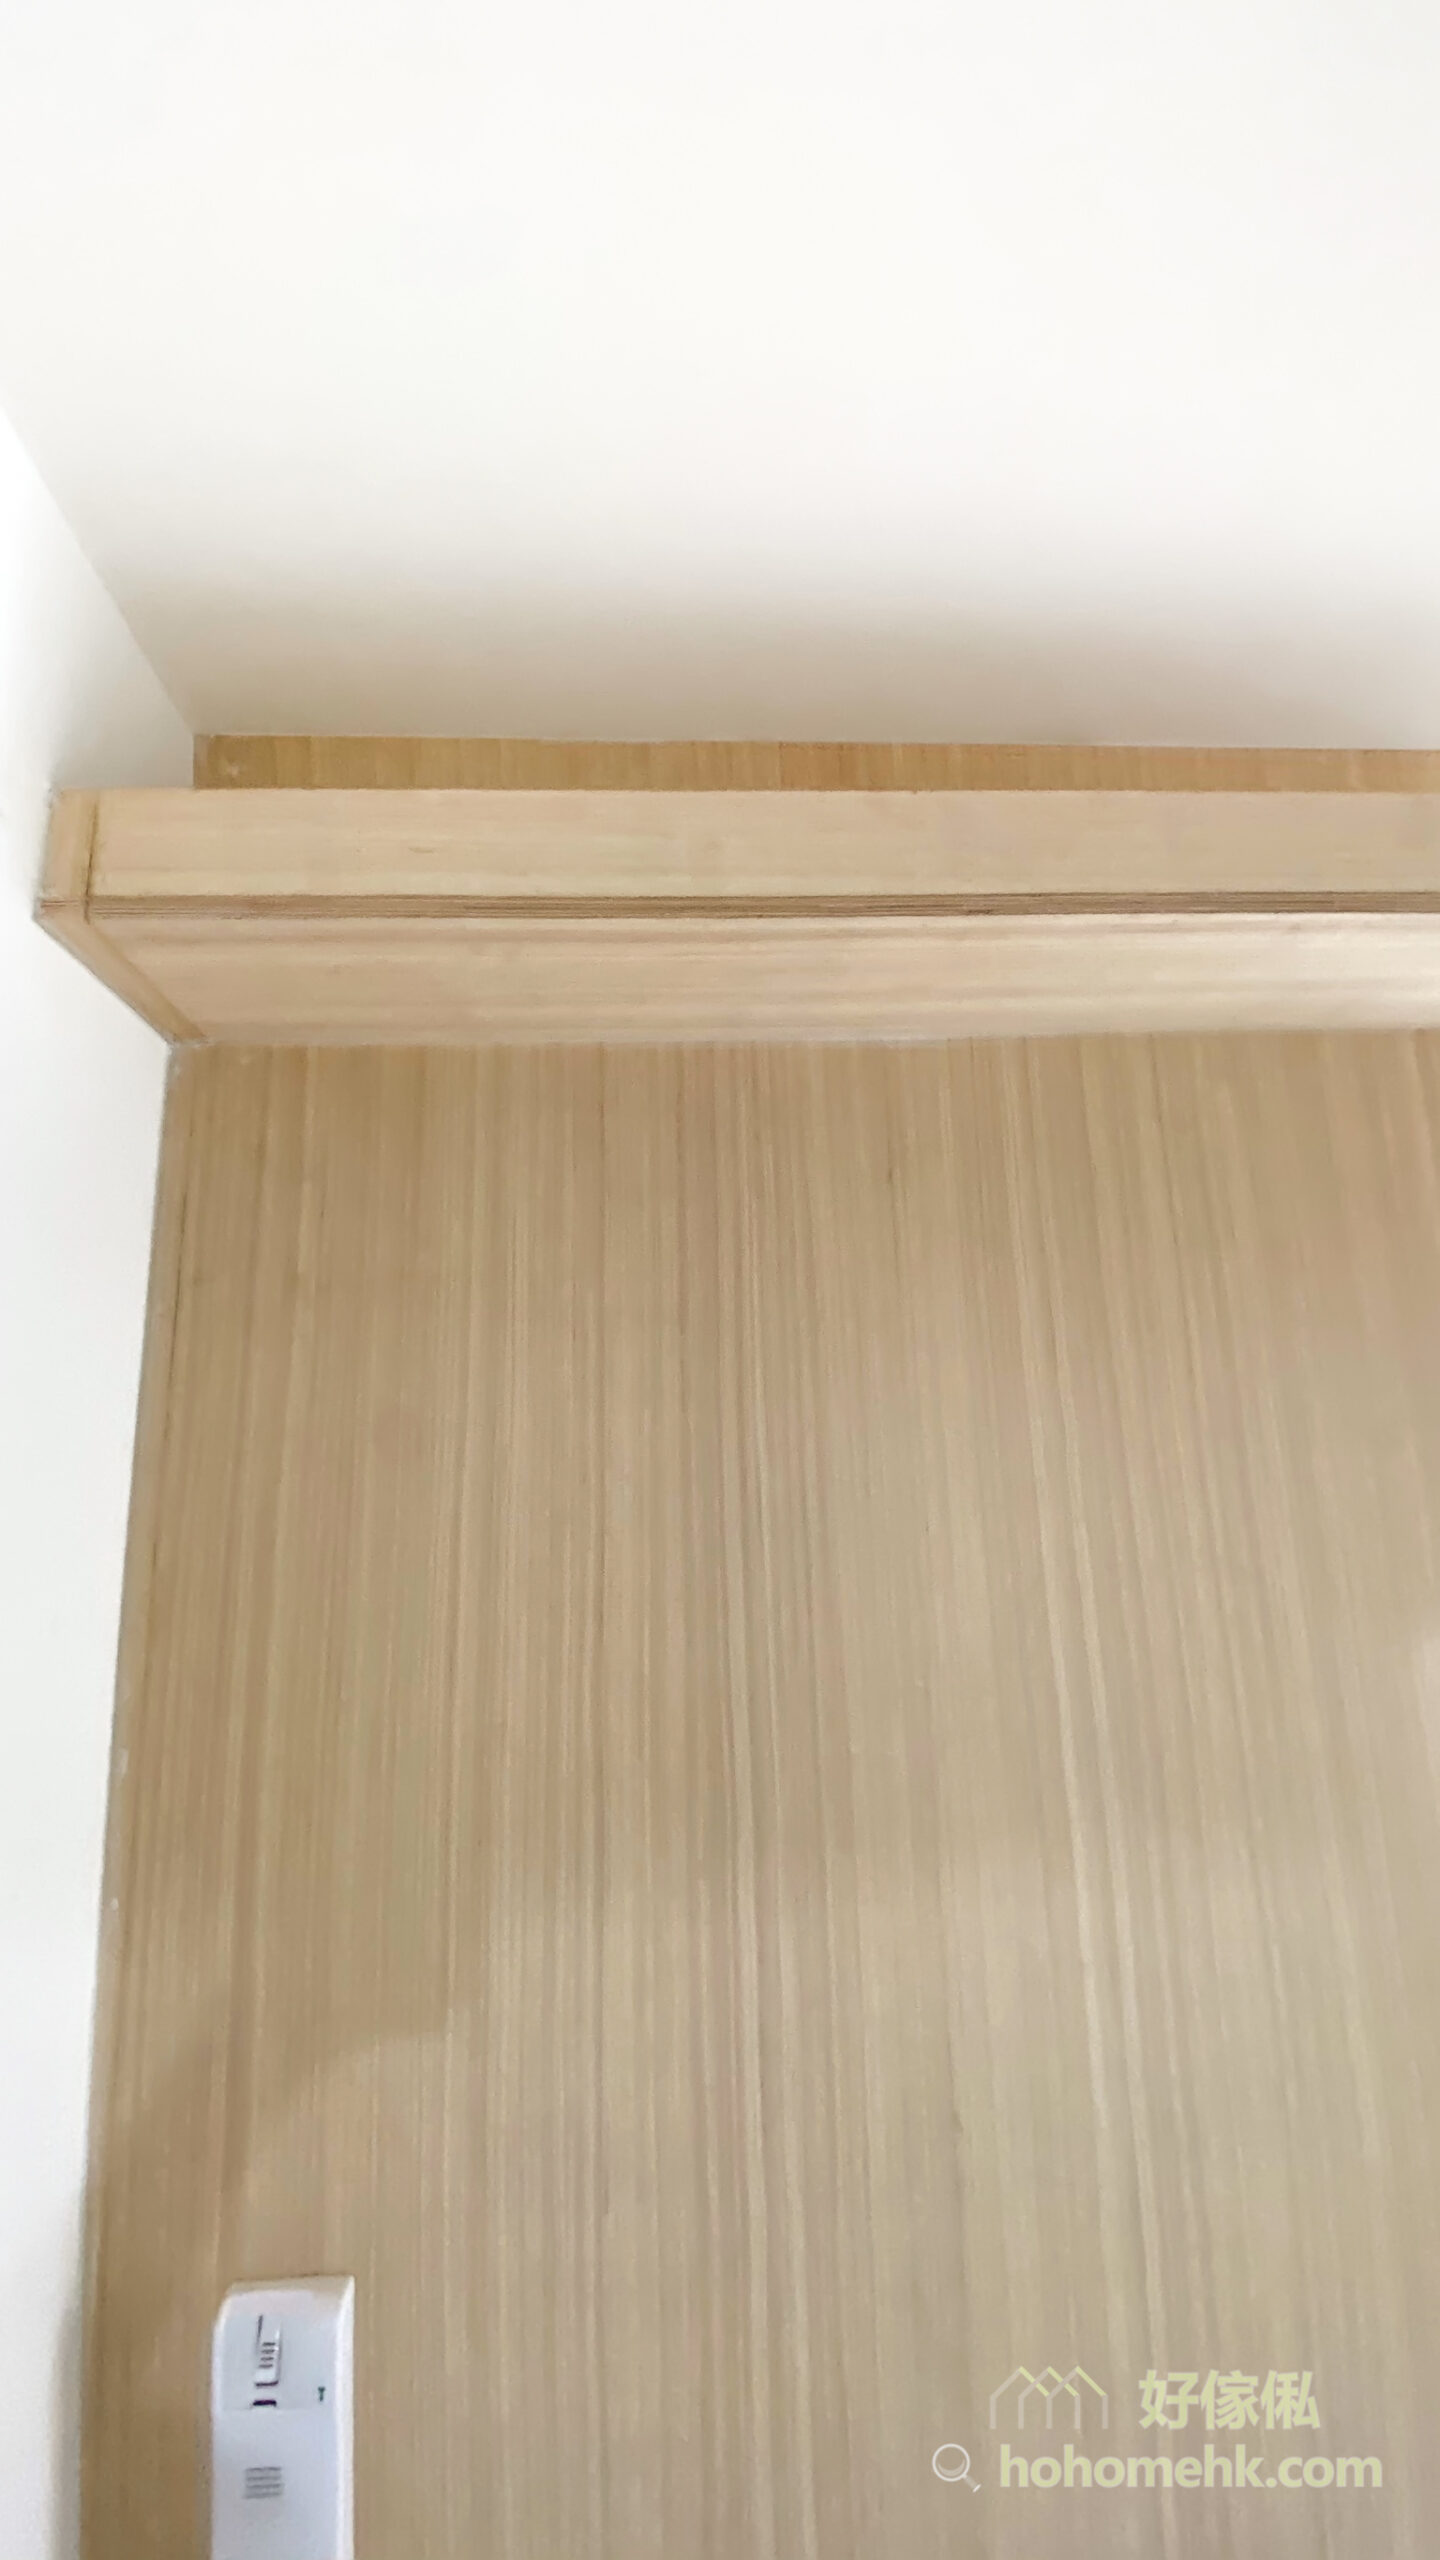 木板除了可以用來造傢俬和間房外，還可以造天花燈槽。圍著全屋空間訂造一整列的燈槽，柔和的光線令空間充滿溫馨感與造型感